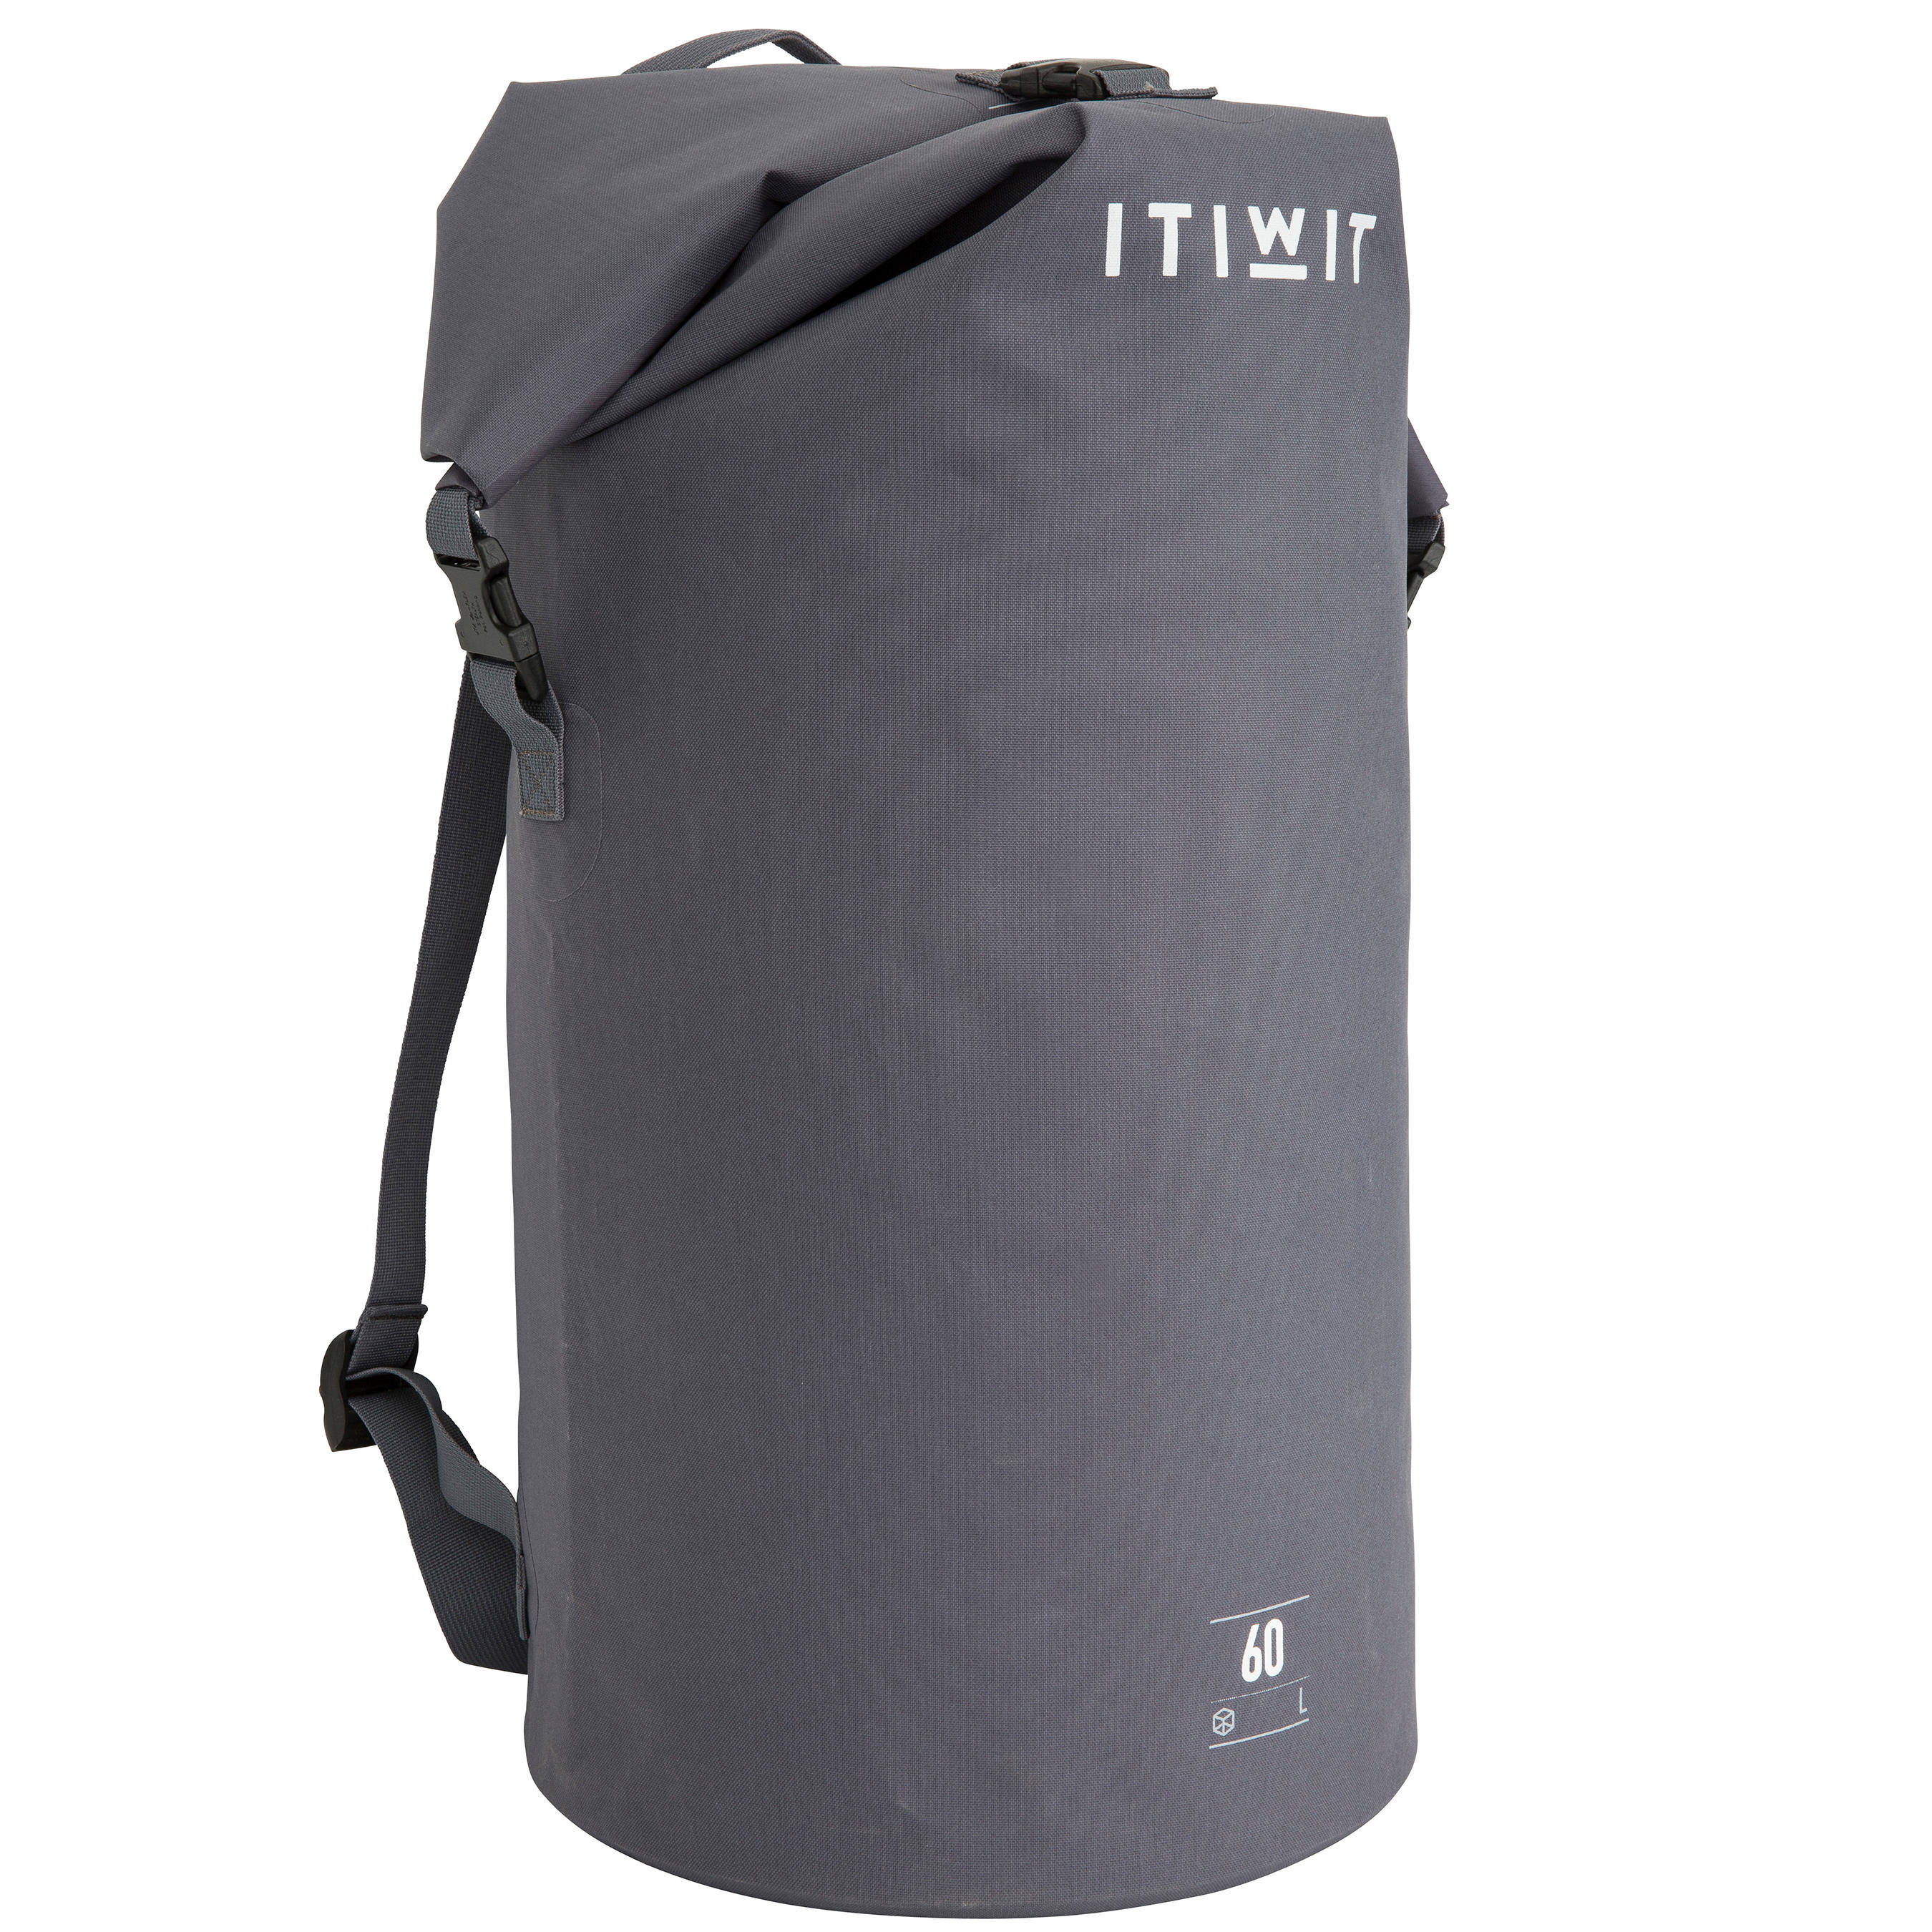 dry pack waterproof backpack